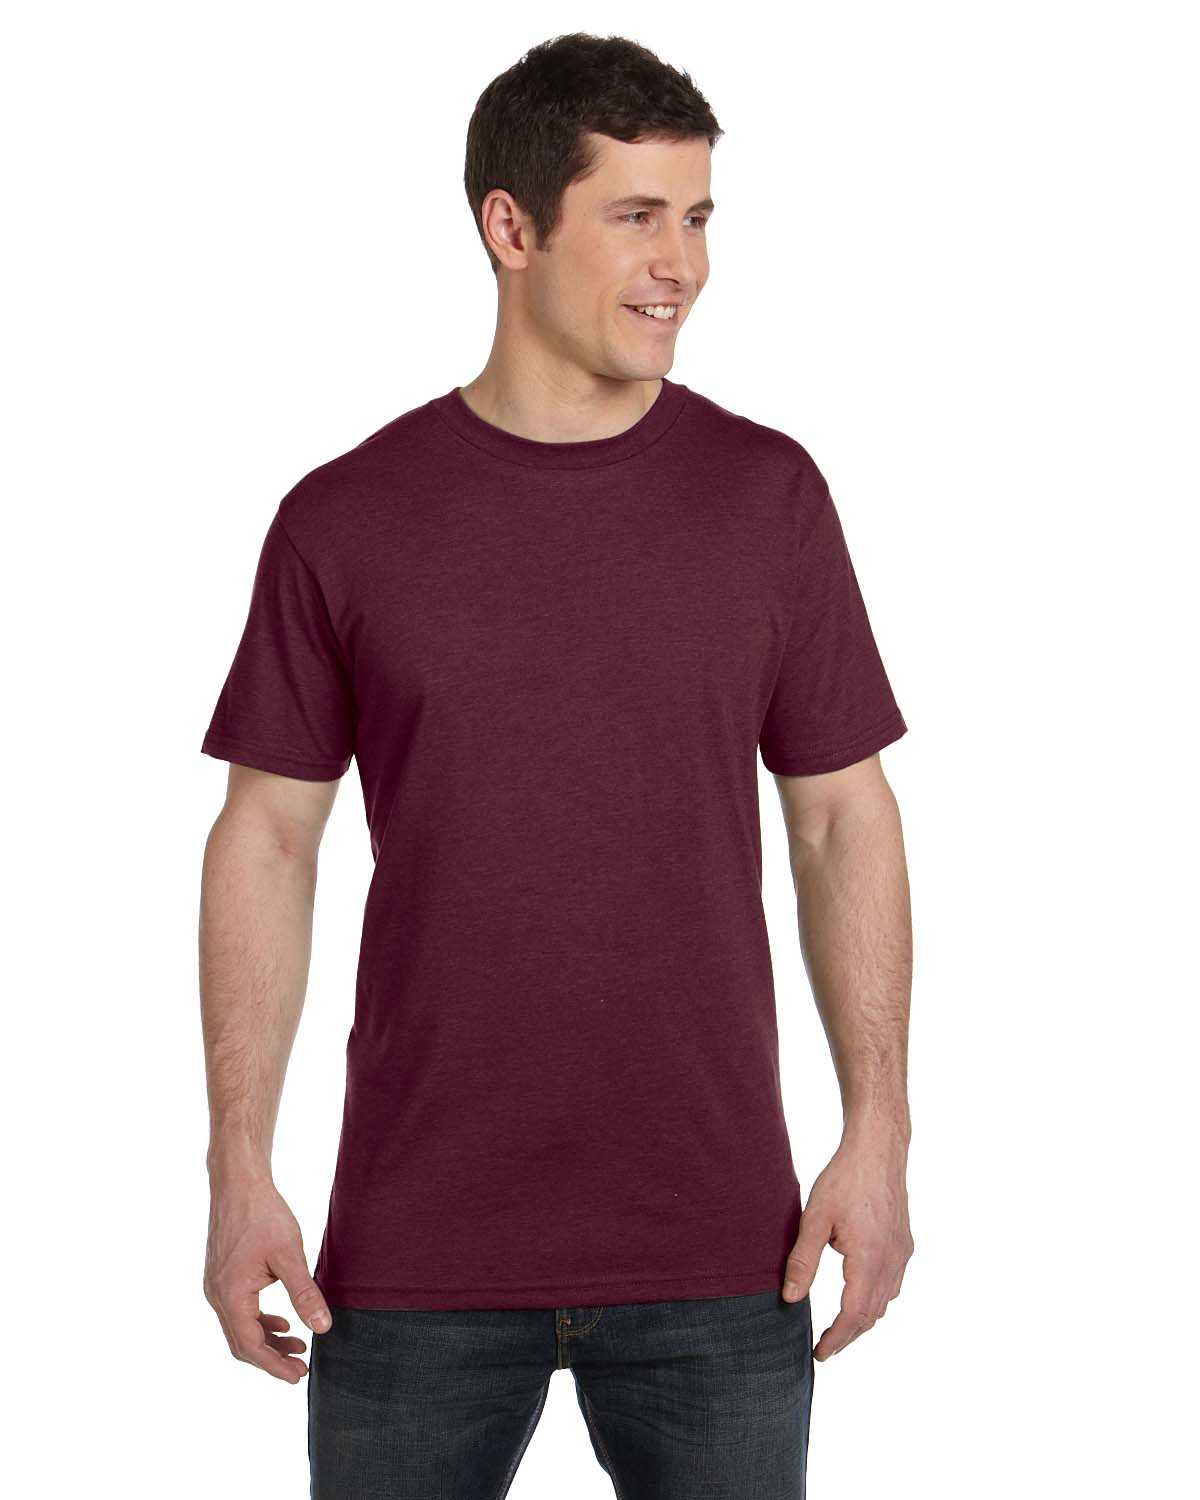 econscious EC1080 Men's 4.25 oz. Blended Eco T-Shirt | ApparelChoice.com